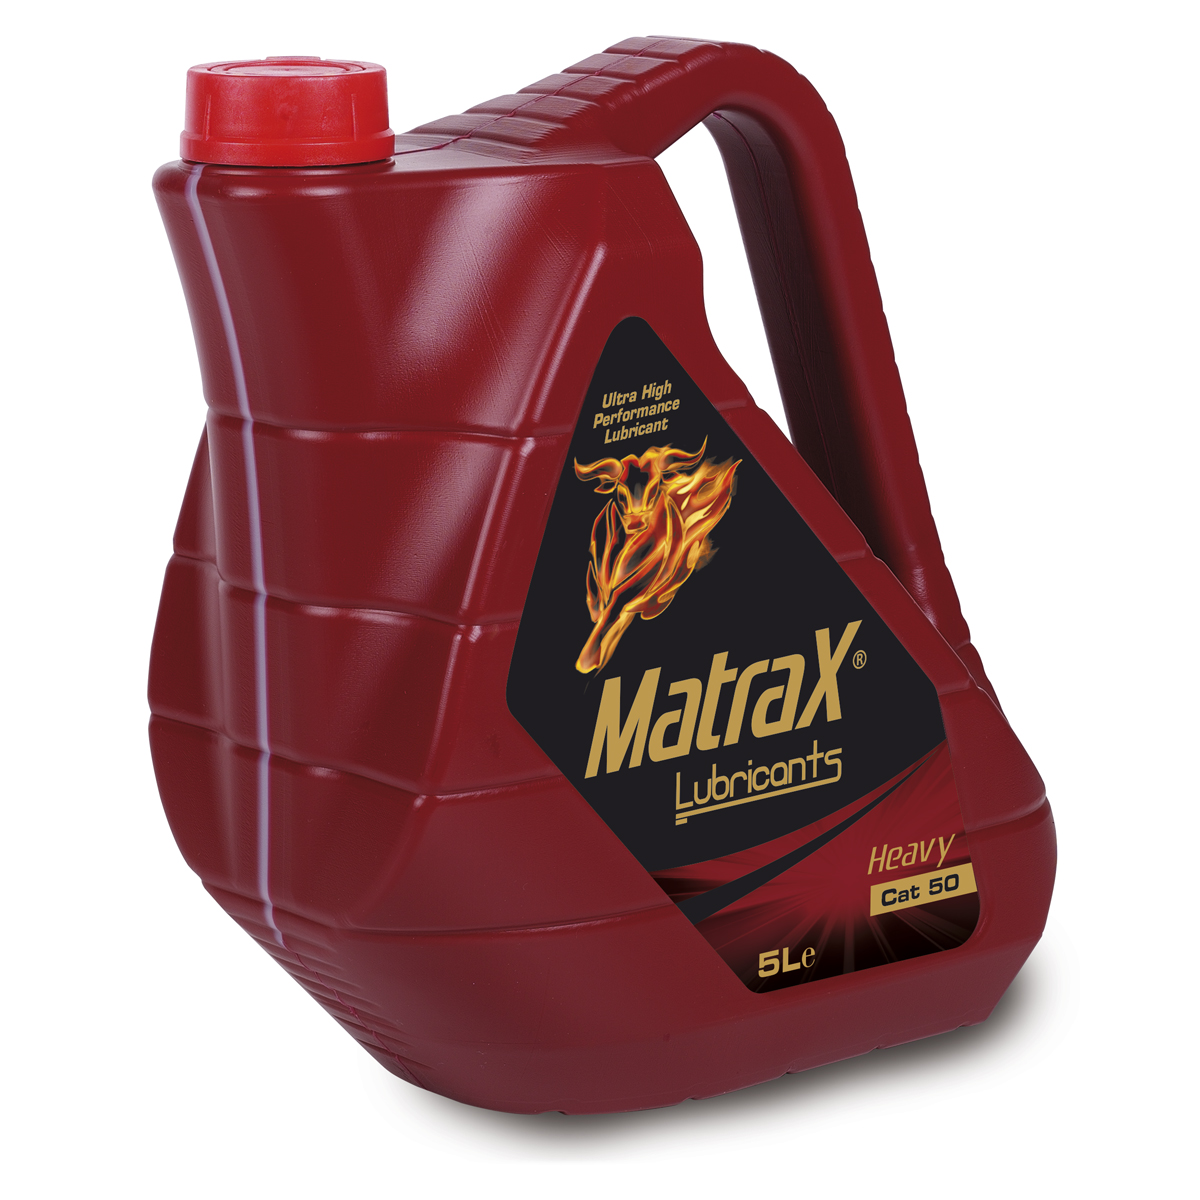 matrax-lubricants-heavy-cat-50-5l